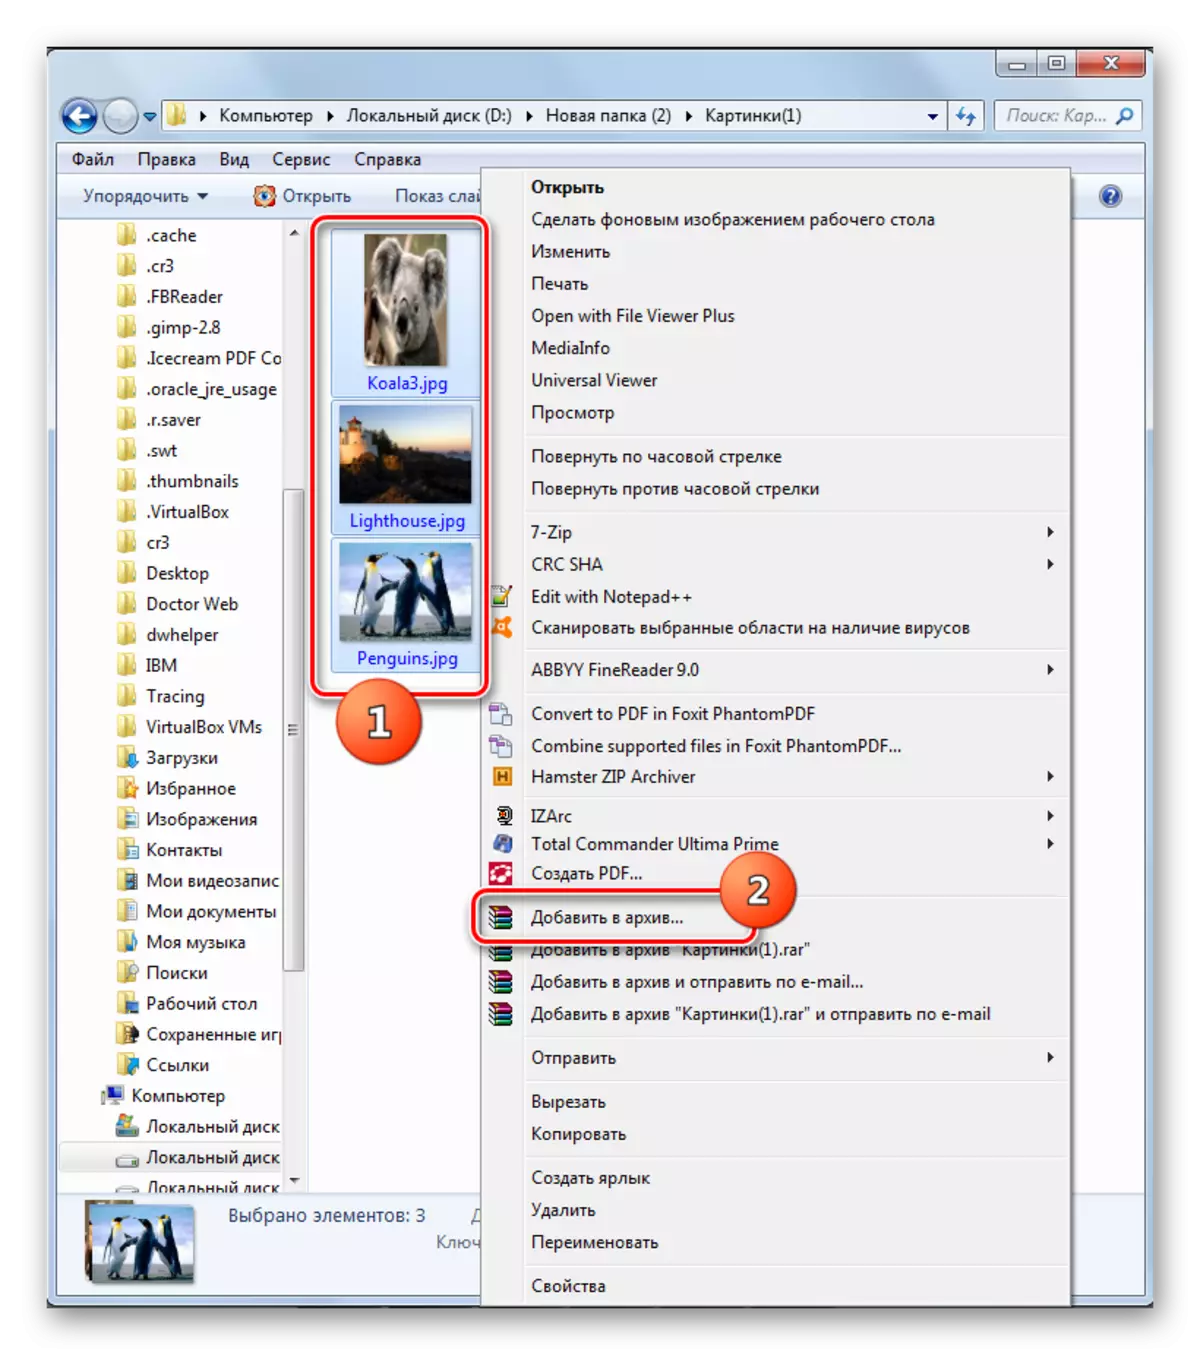 Ga naar het maken van een archief in het WinRar-programma via het contextmenu van de Windows-prodes